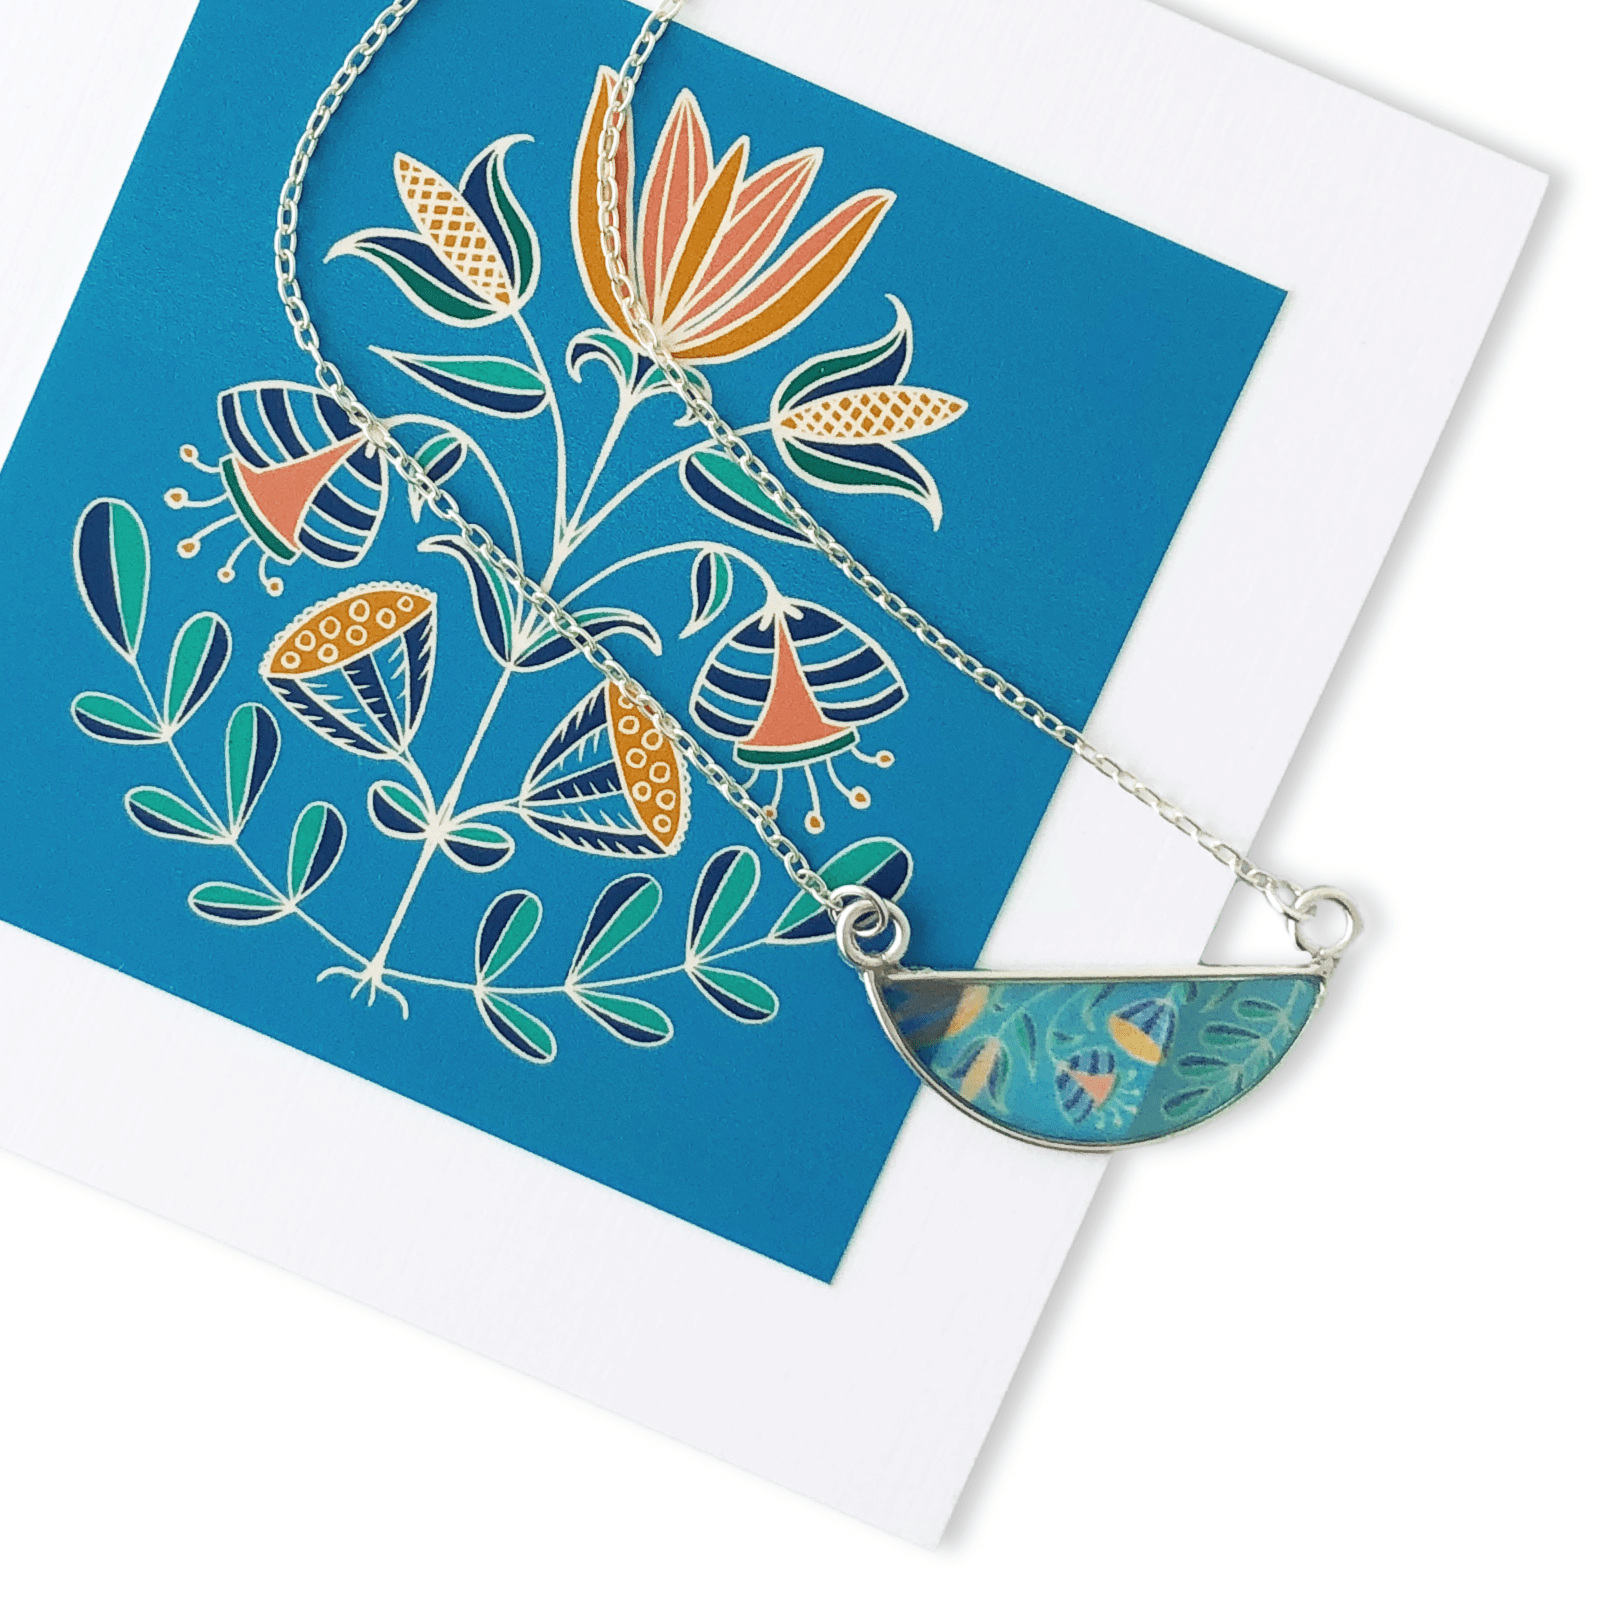 Illustrated Flower Garden Necklace by Jen Fox